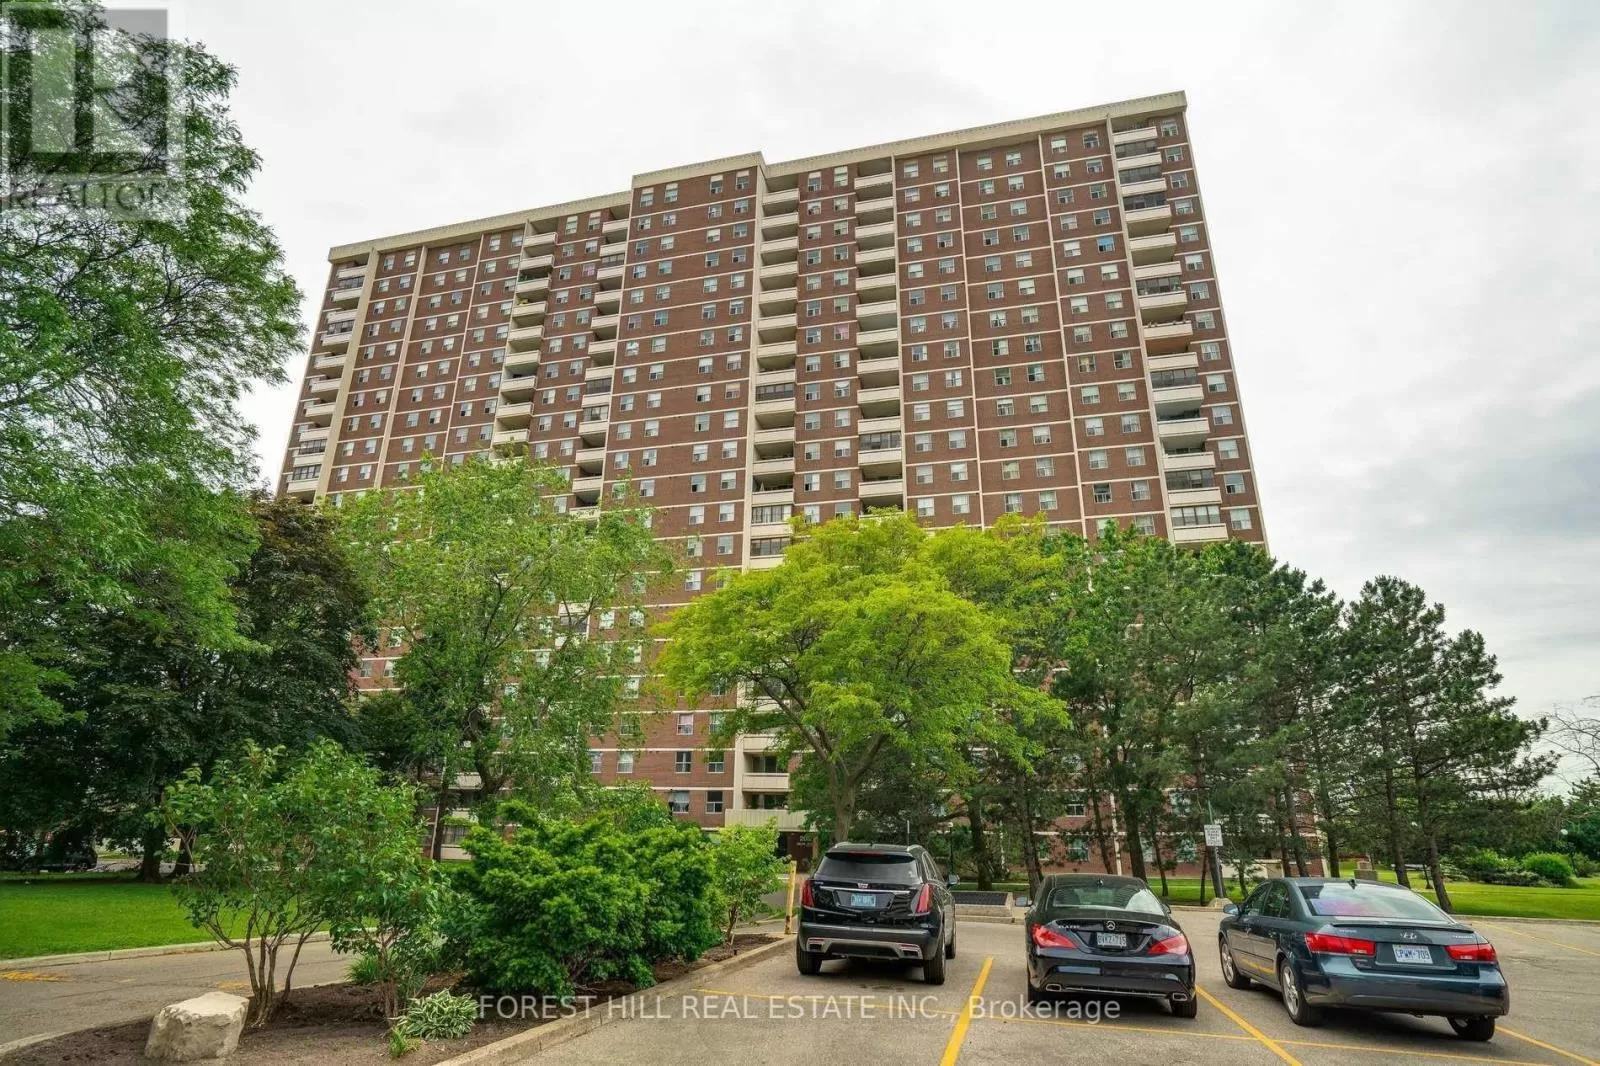 Apartment for rent: 812 - 205 Hilda Avenue, Toronto, Ontario M2M 4B1